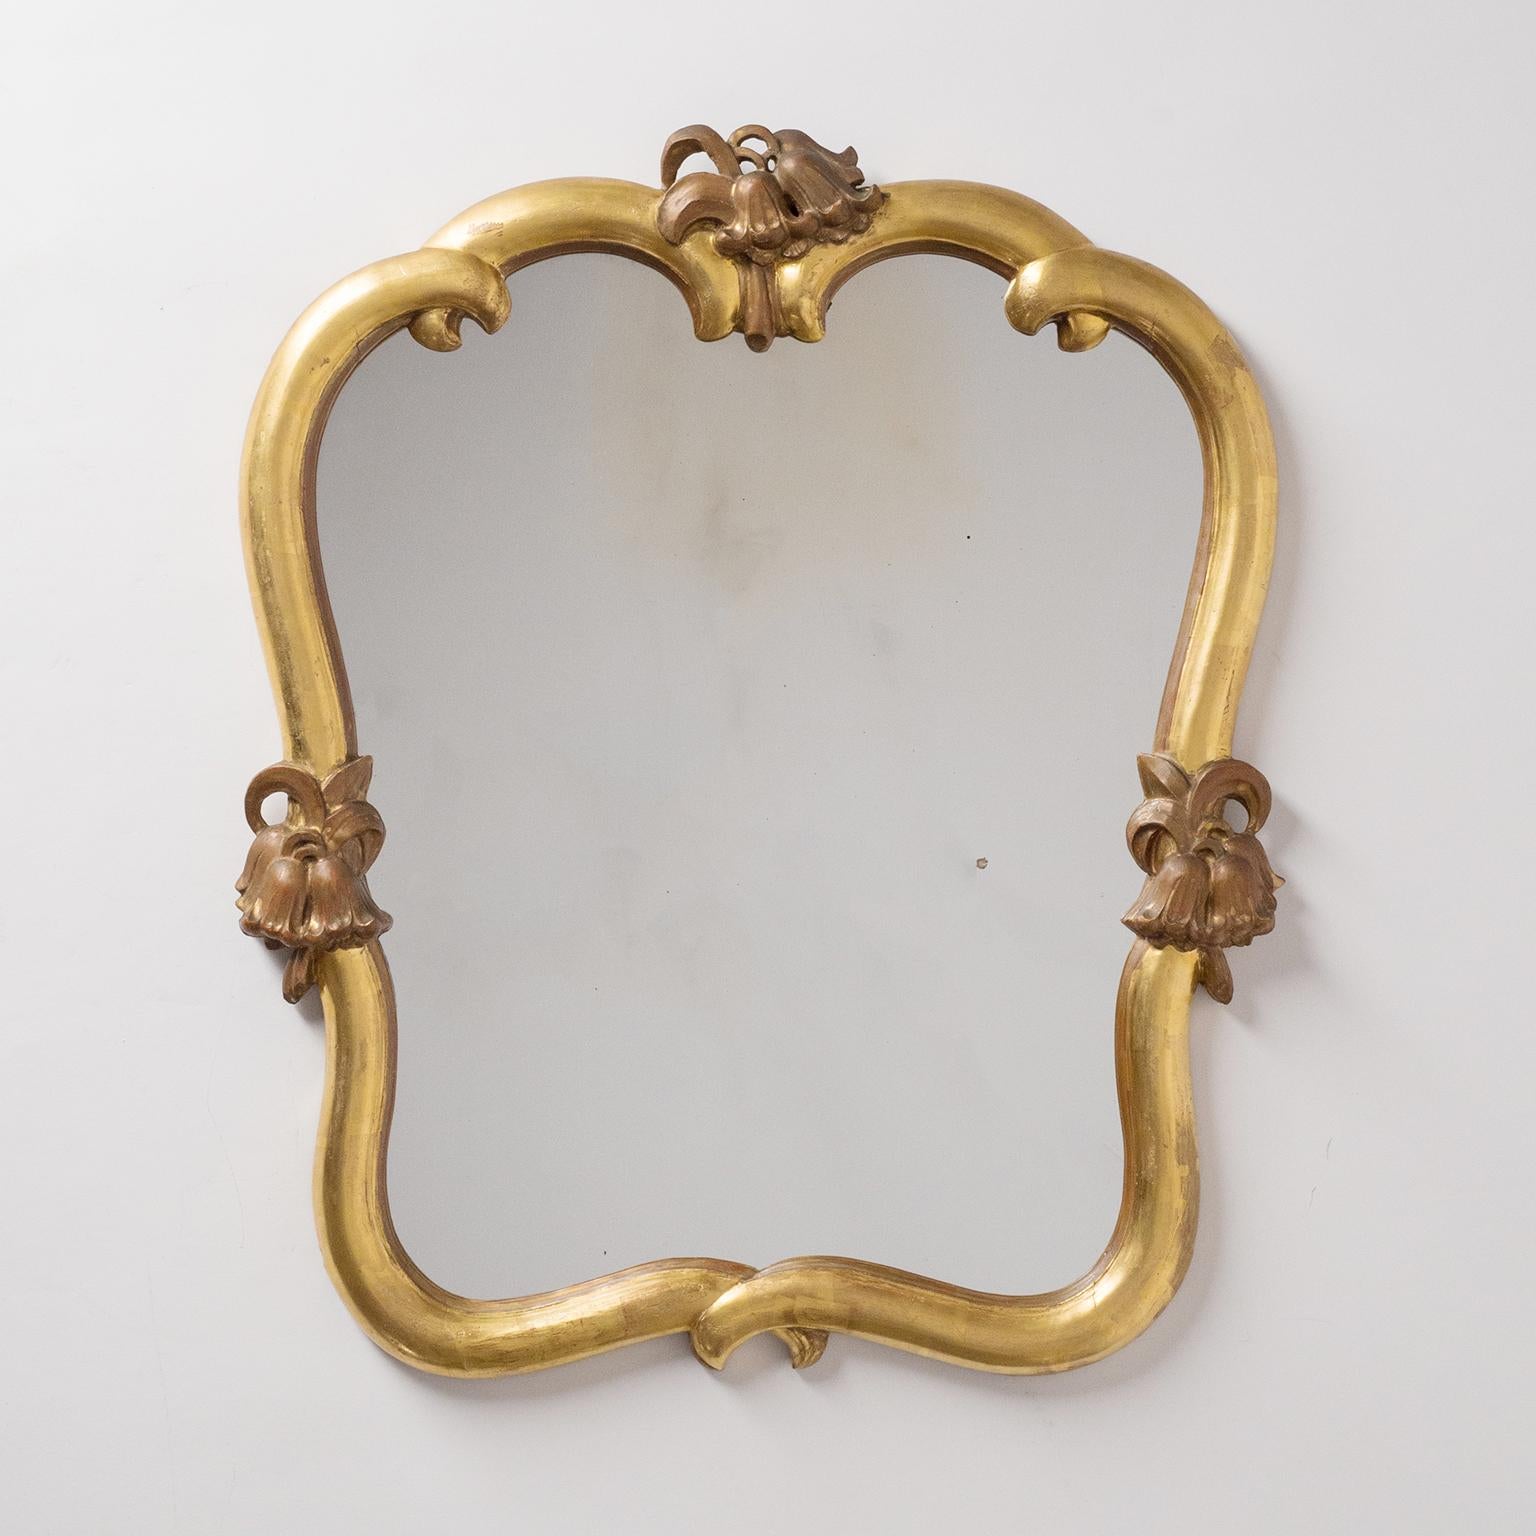 Seltenes Paar vergoldeter Spiegel von Max Welz, um 1930. Geschnitztes Lindenholz mit Blattgold und floralen Verzierungen - bemerkenswert ist, dass die floralen Verzierungen auf der Oberseite gespiegelt sind. Sehr guter Zustand (Rahmen und Rückwand